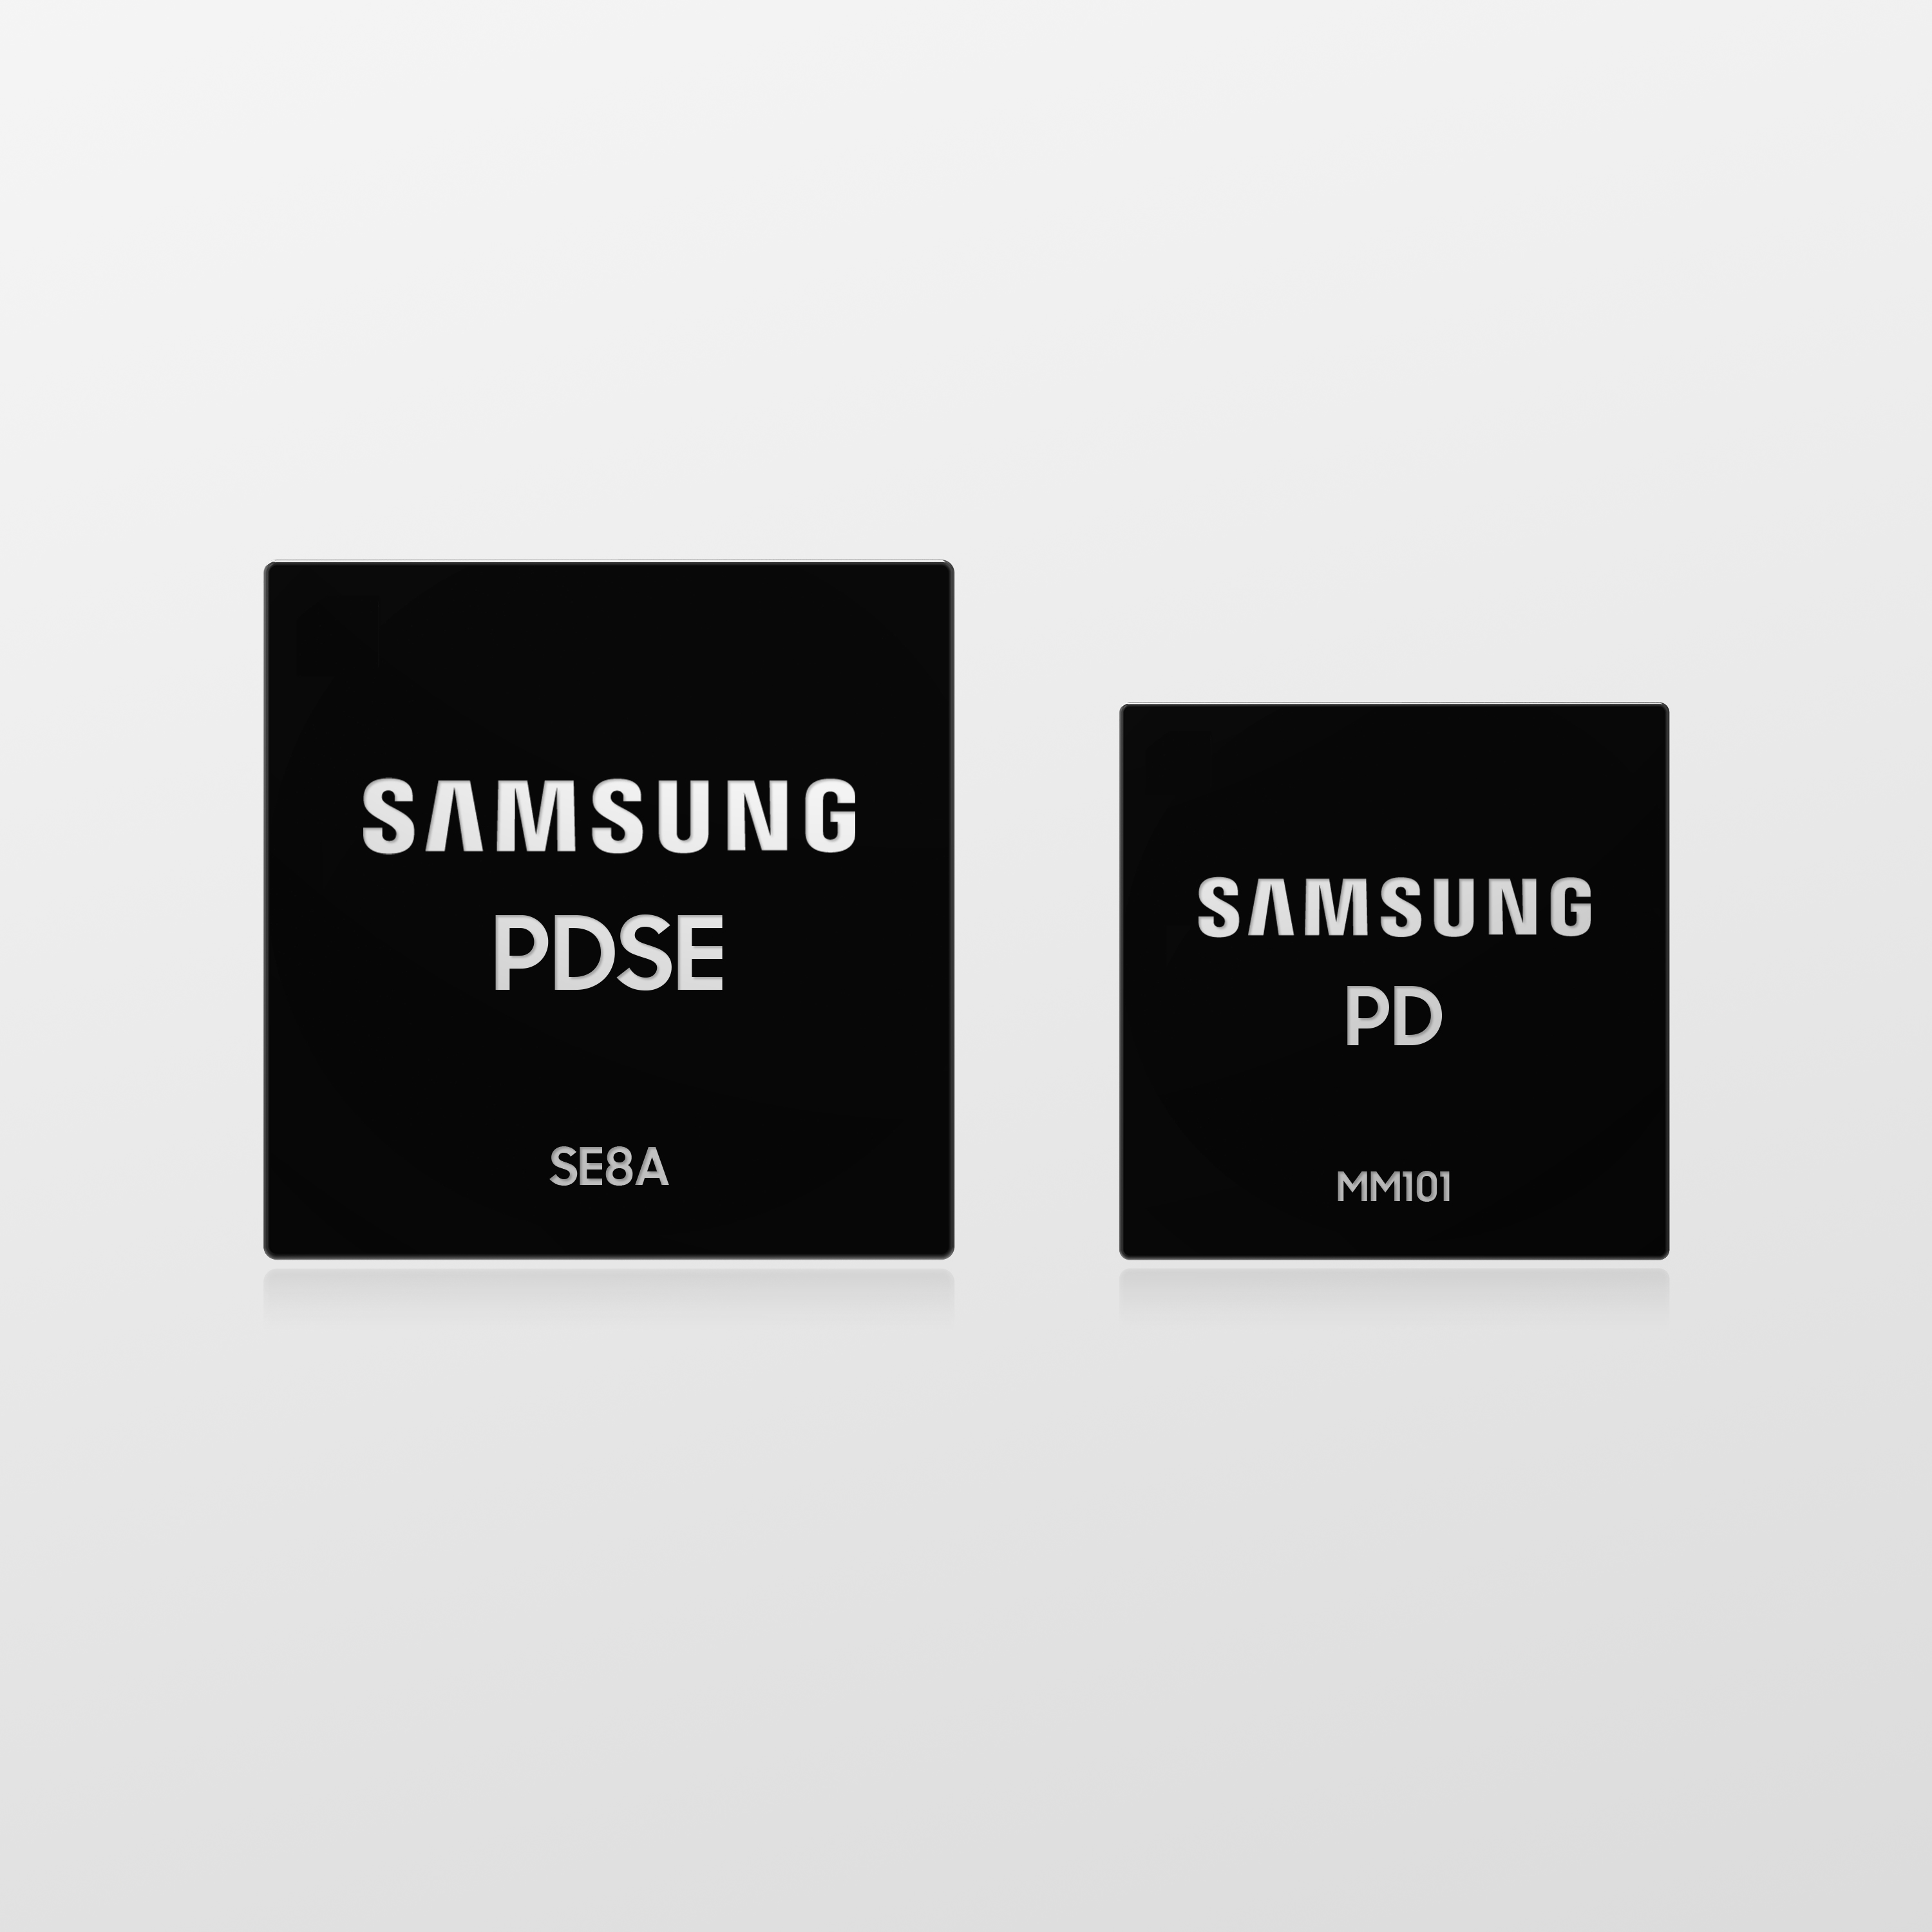 Samsung anuncia chips para carregamento seguro de 100 W via USB-C